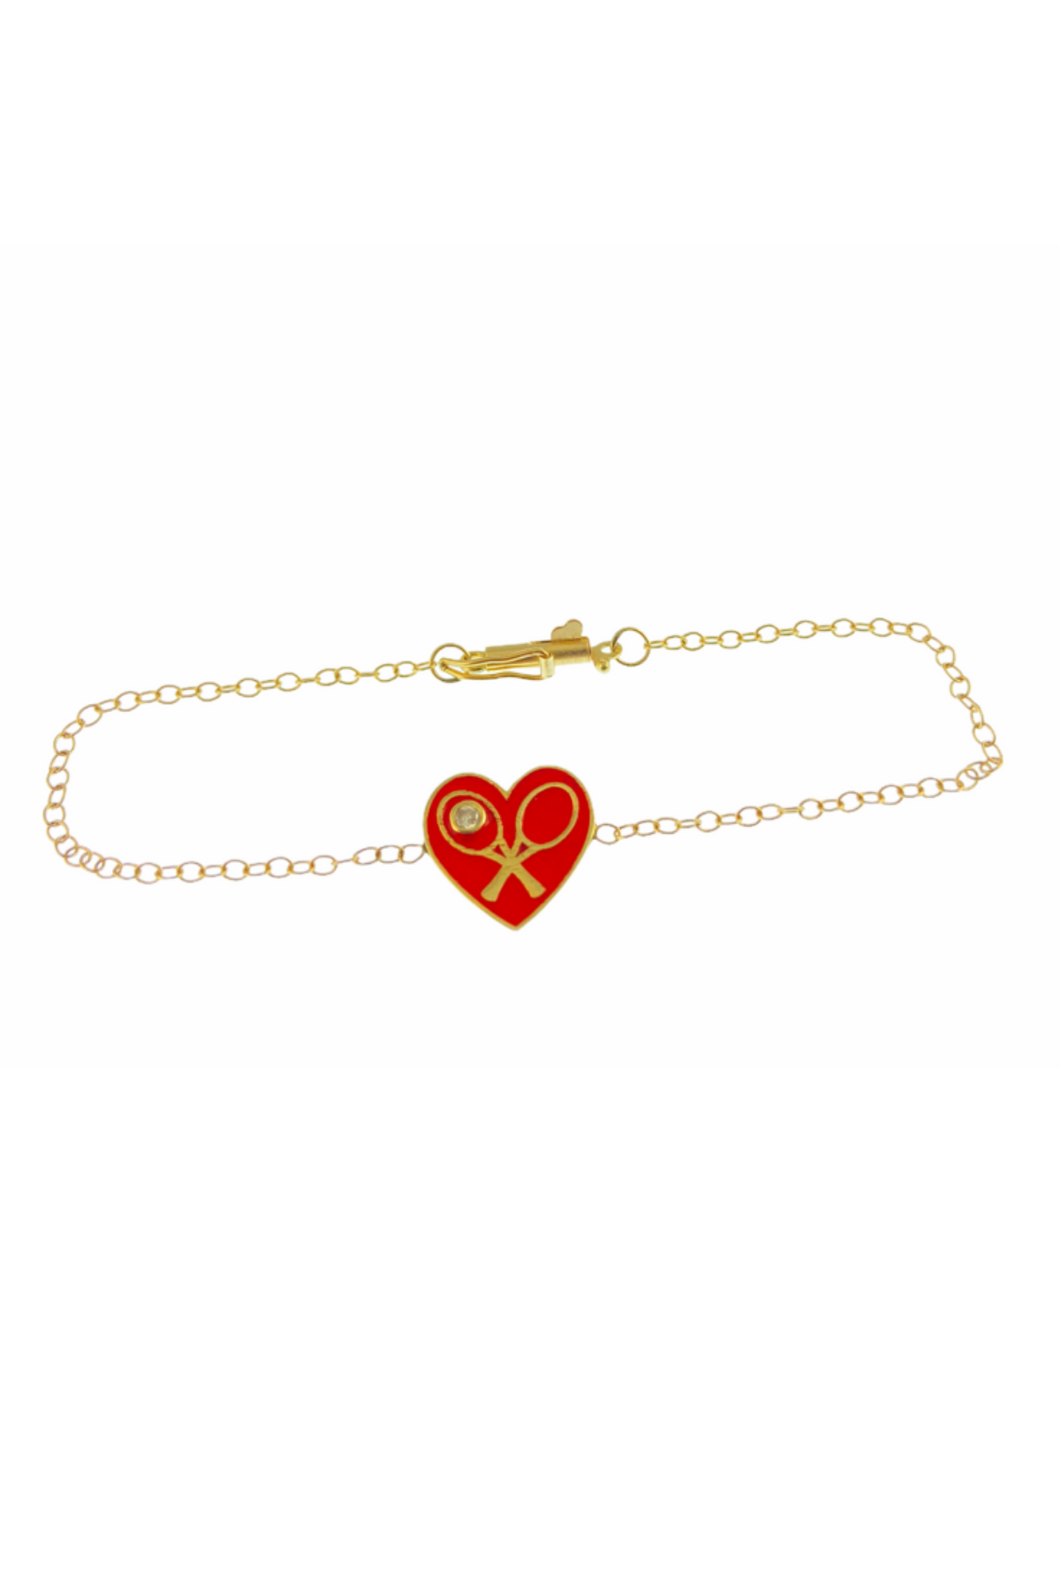 Red Enamel Heart + Diamond Gold Bracelet - I LOVE MY DOUBLES PARTNER!!!